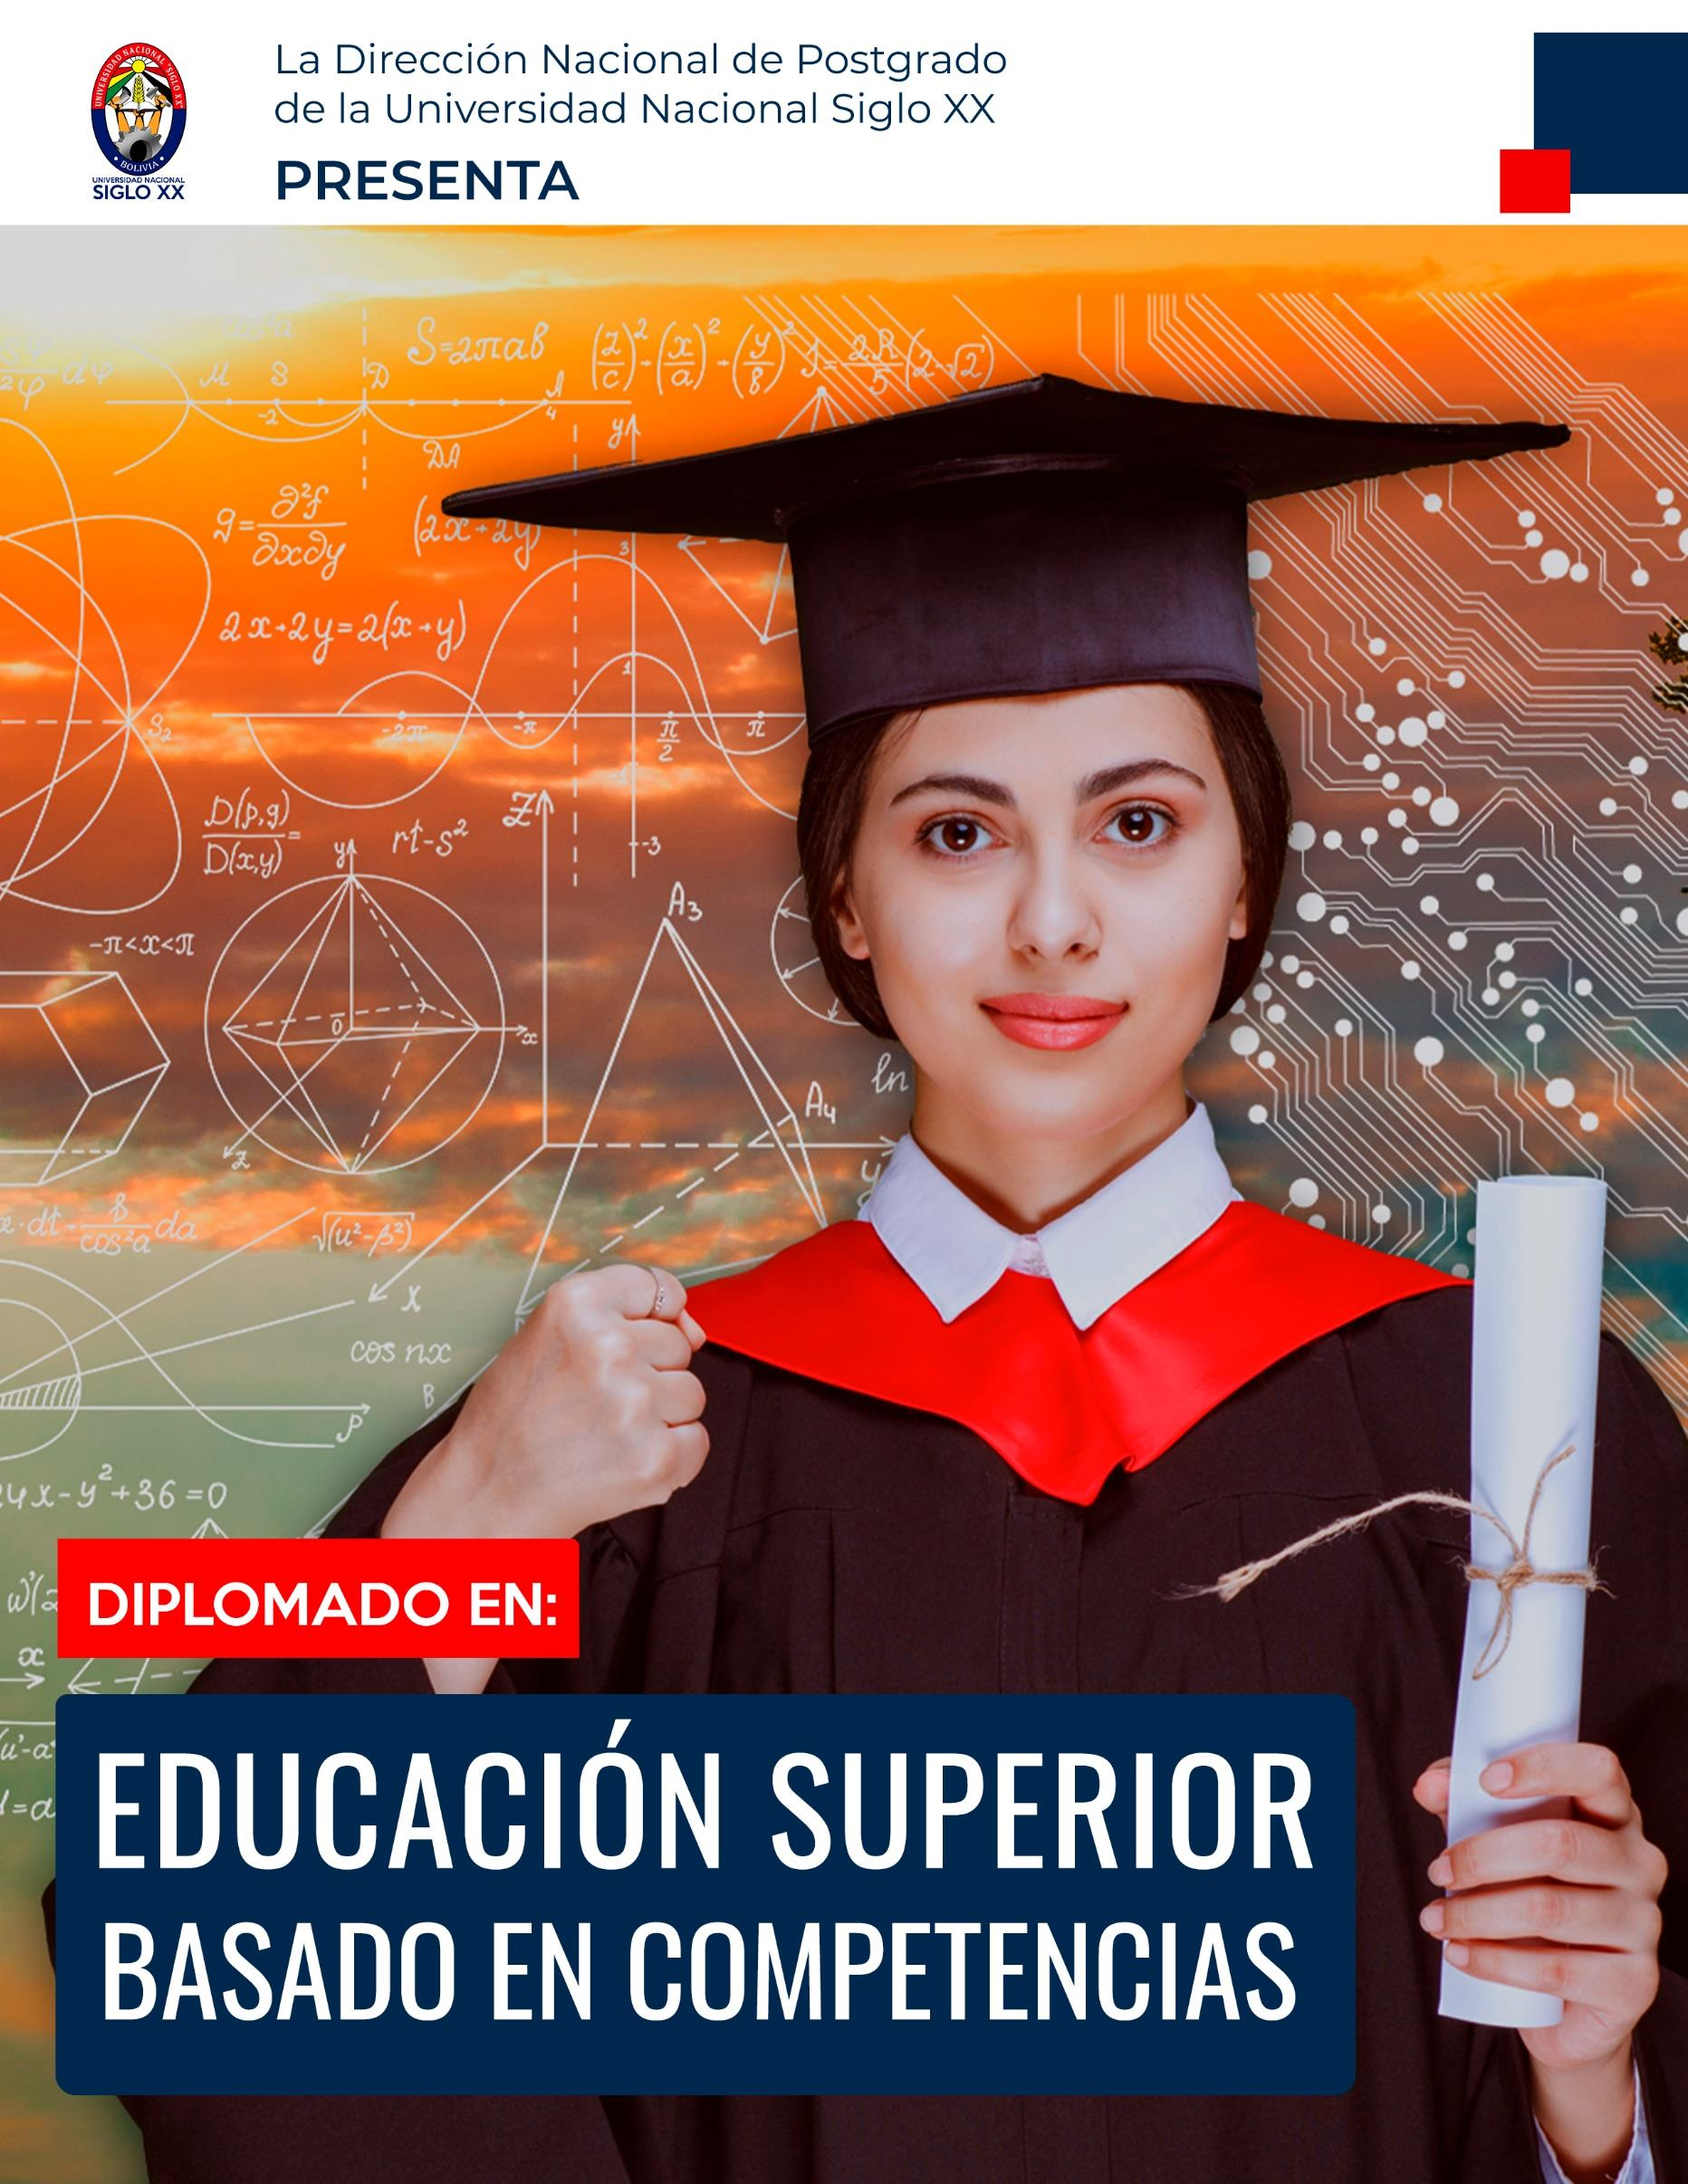 Diplomado Educacion Superior Basado En Competencias